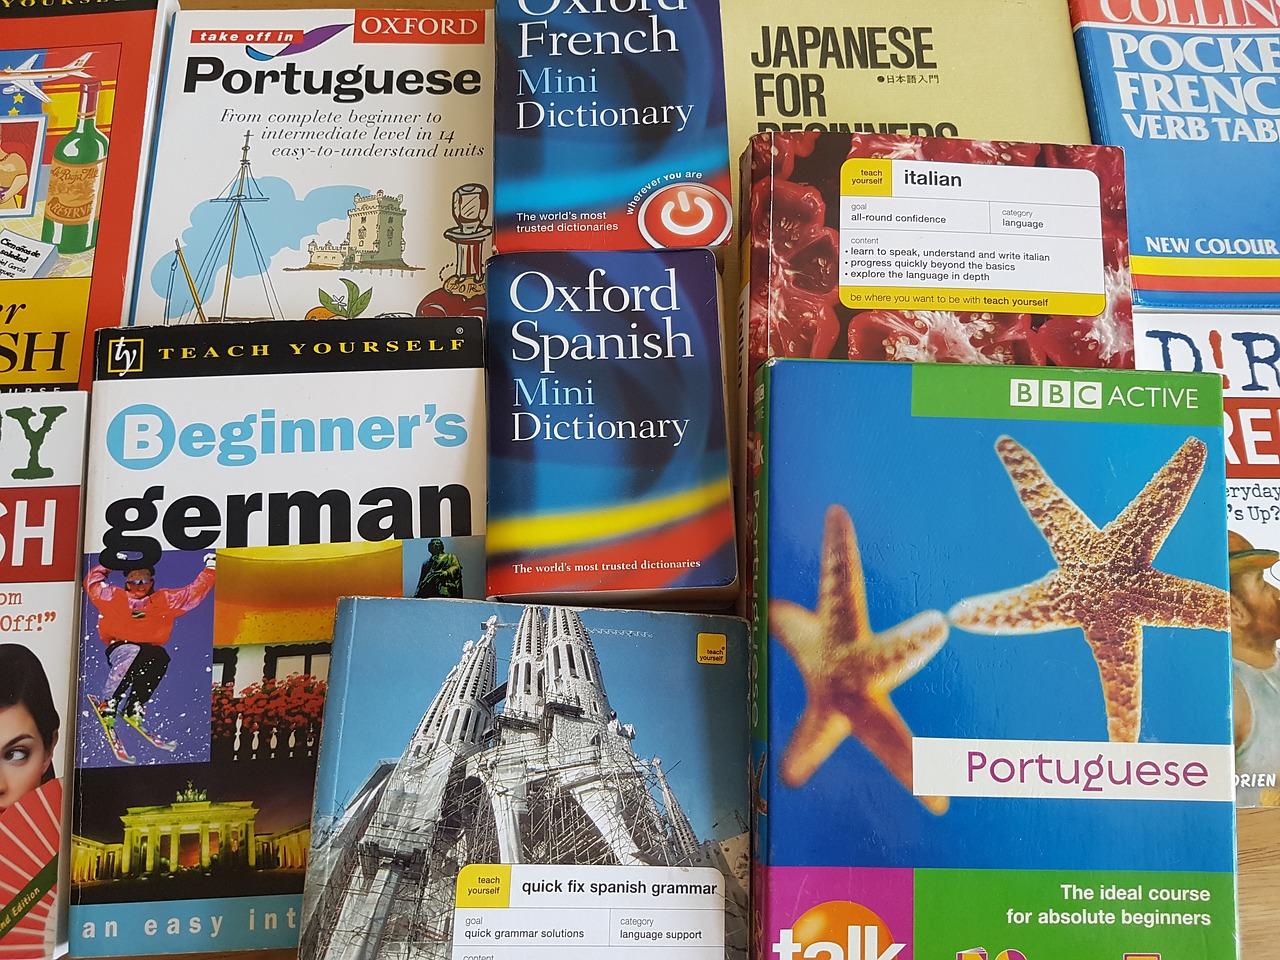 Co warto wiedzieć o kursach językowych?